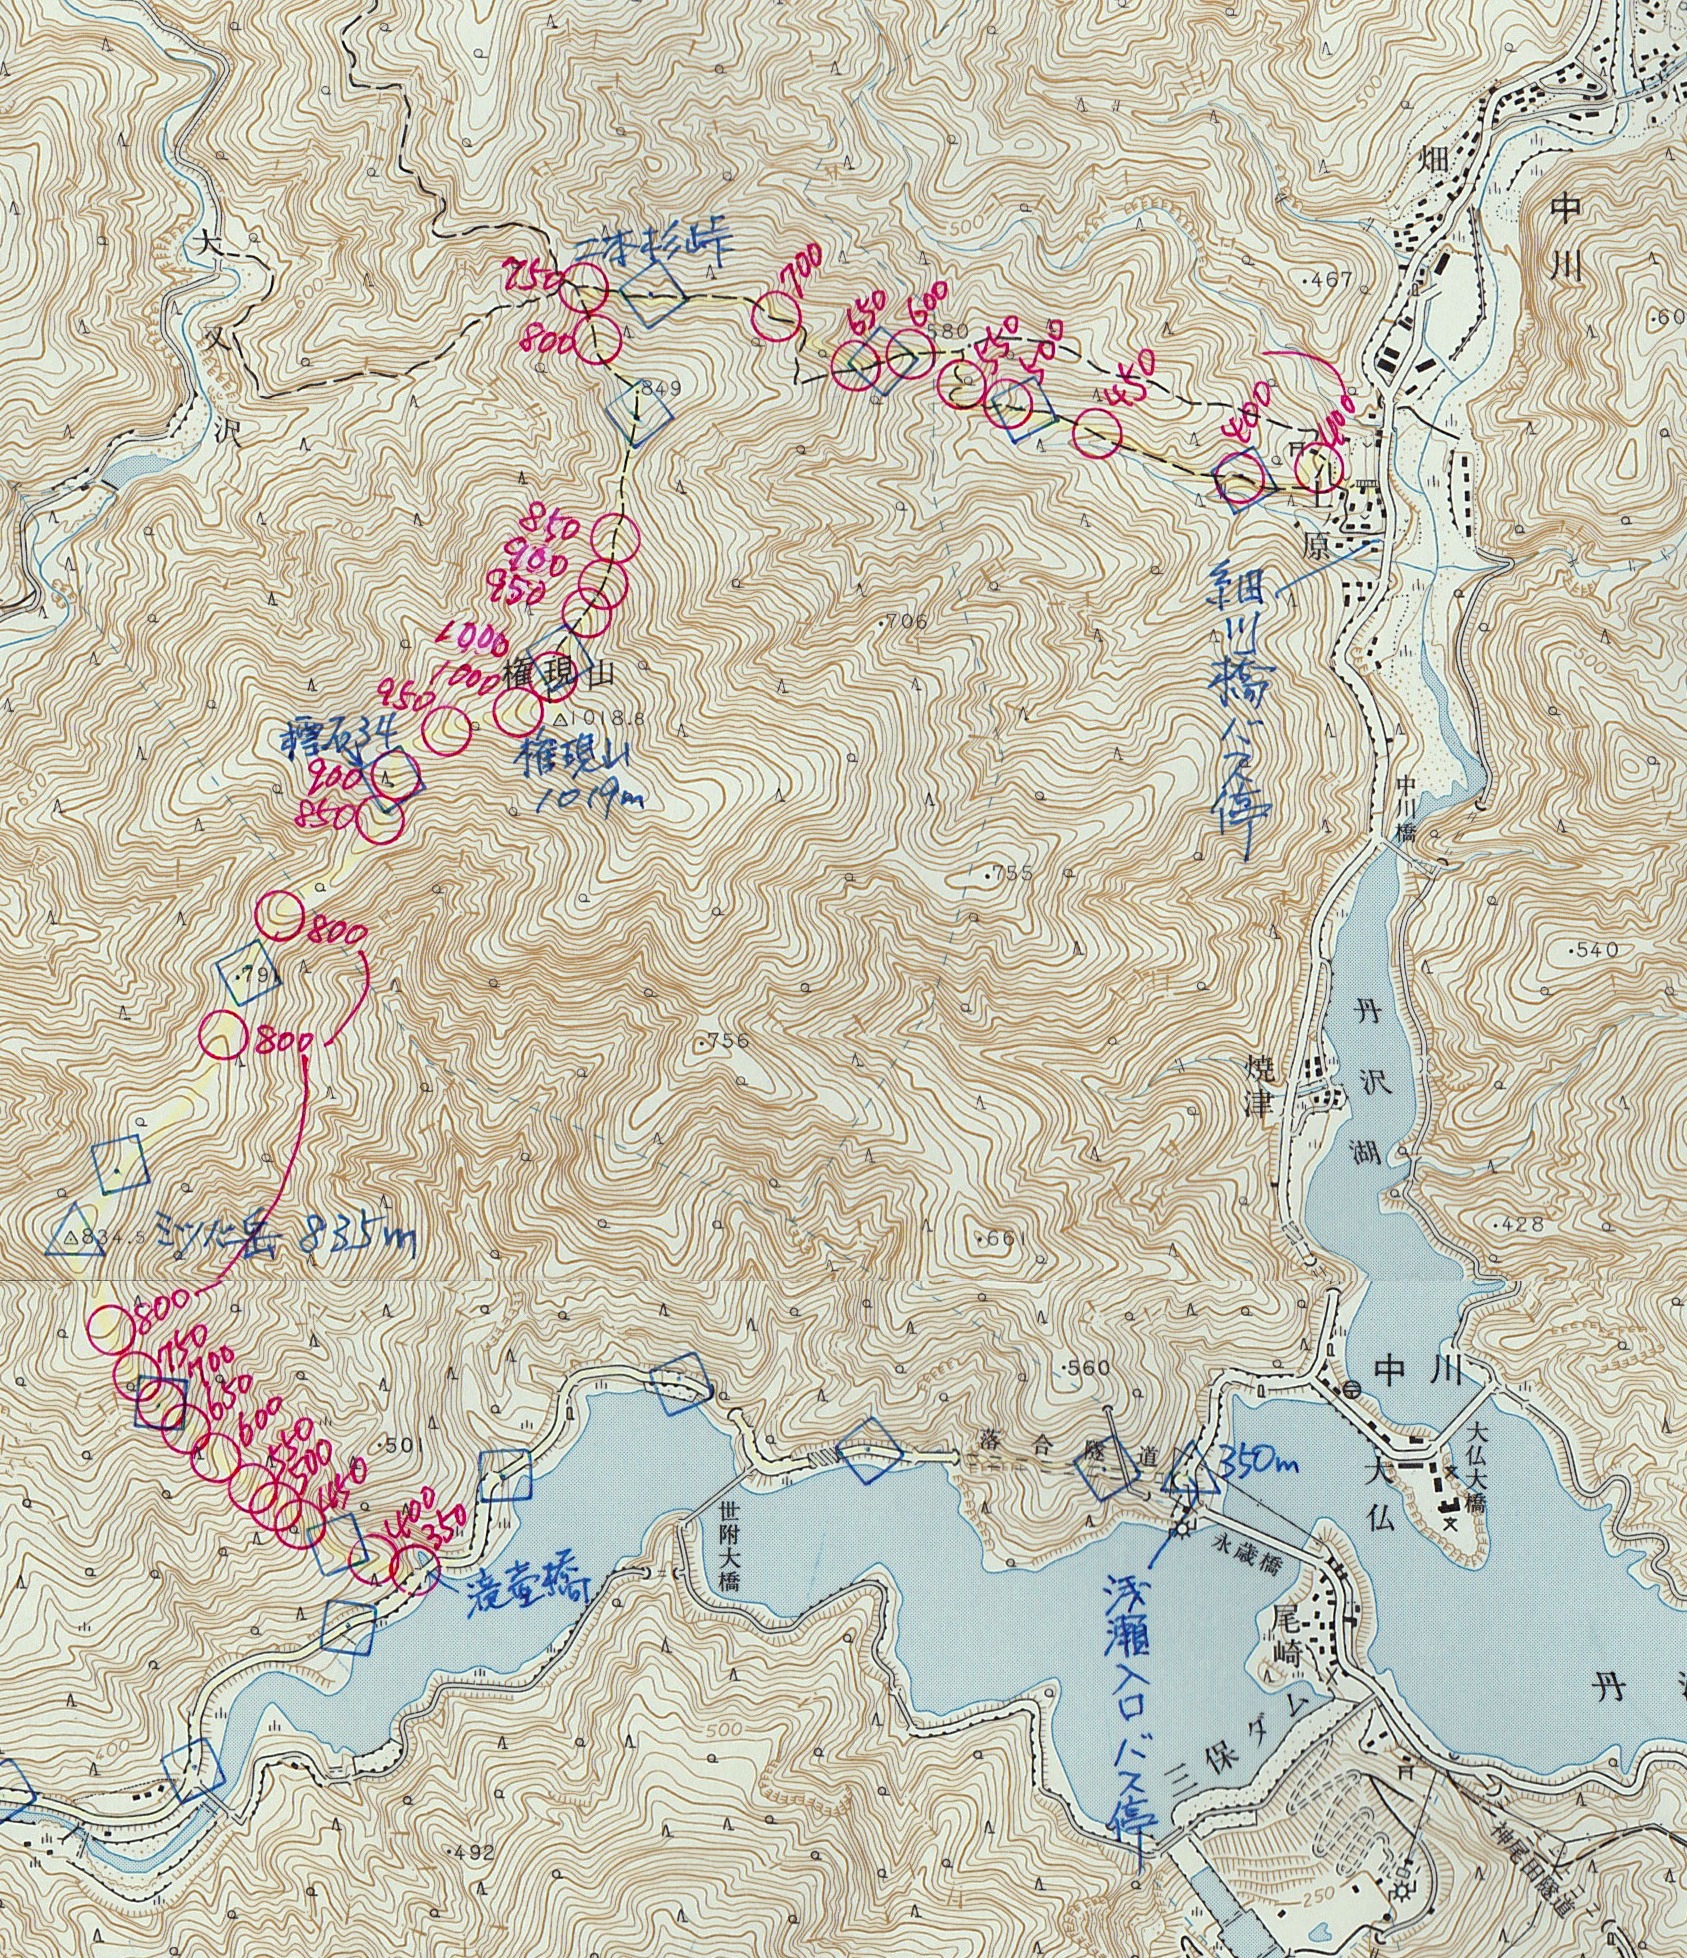 陣馬山地図、map